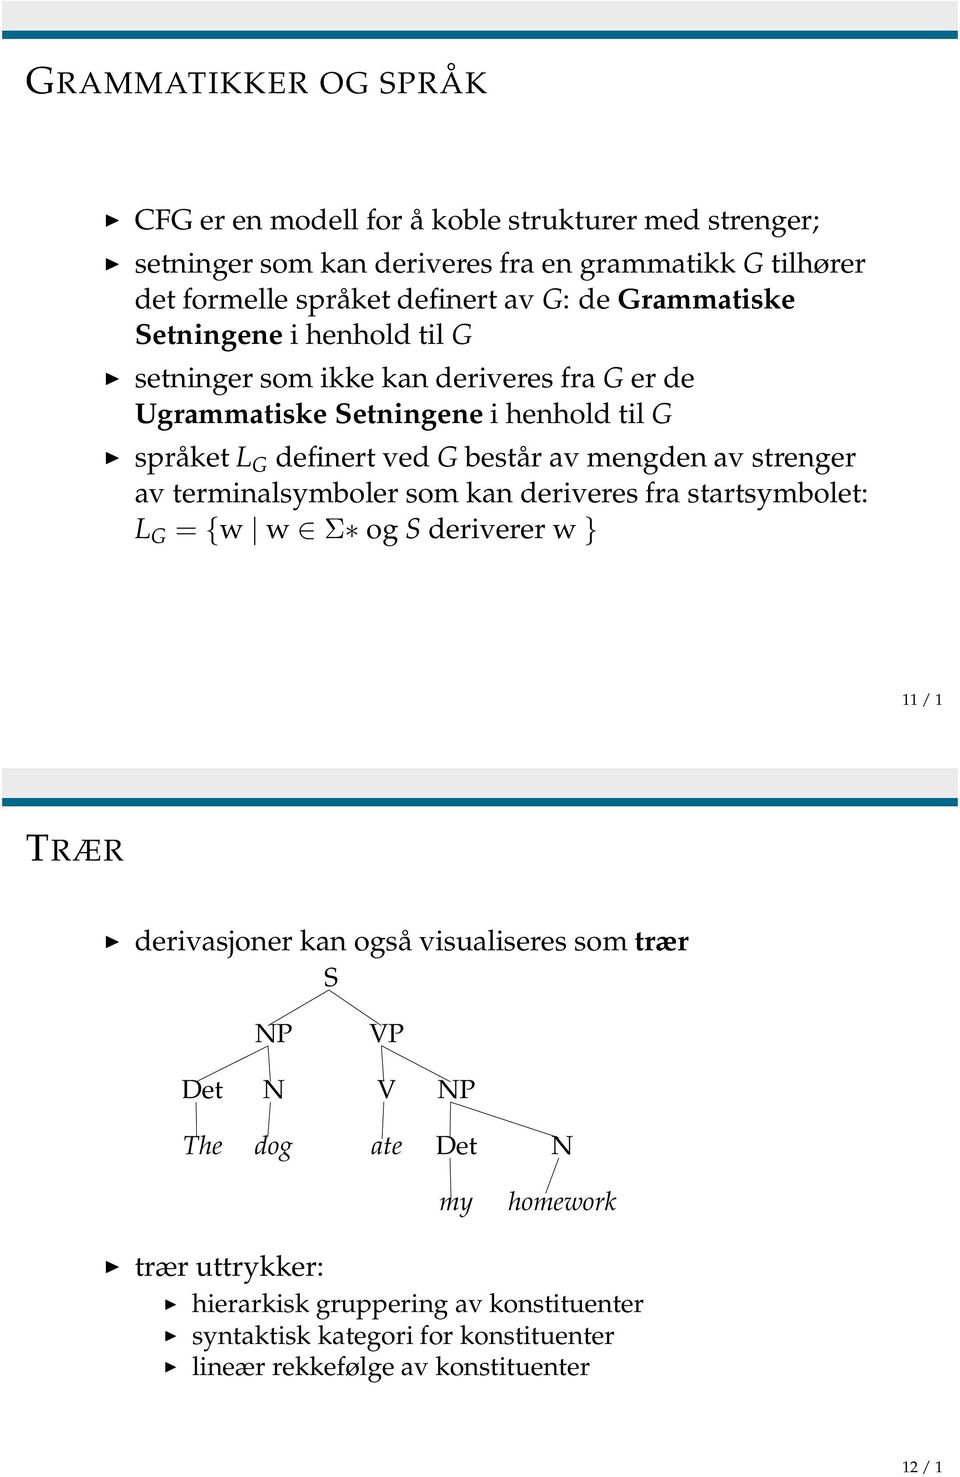 mengden av strenger av terminalsymboler som kan deriveres fra startsymbolet: L G = {w w Σ og S deriverer w } 11 / 1 TRÆR derivasjoner kan også visualiseres som trær S NP